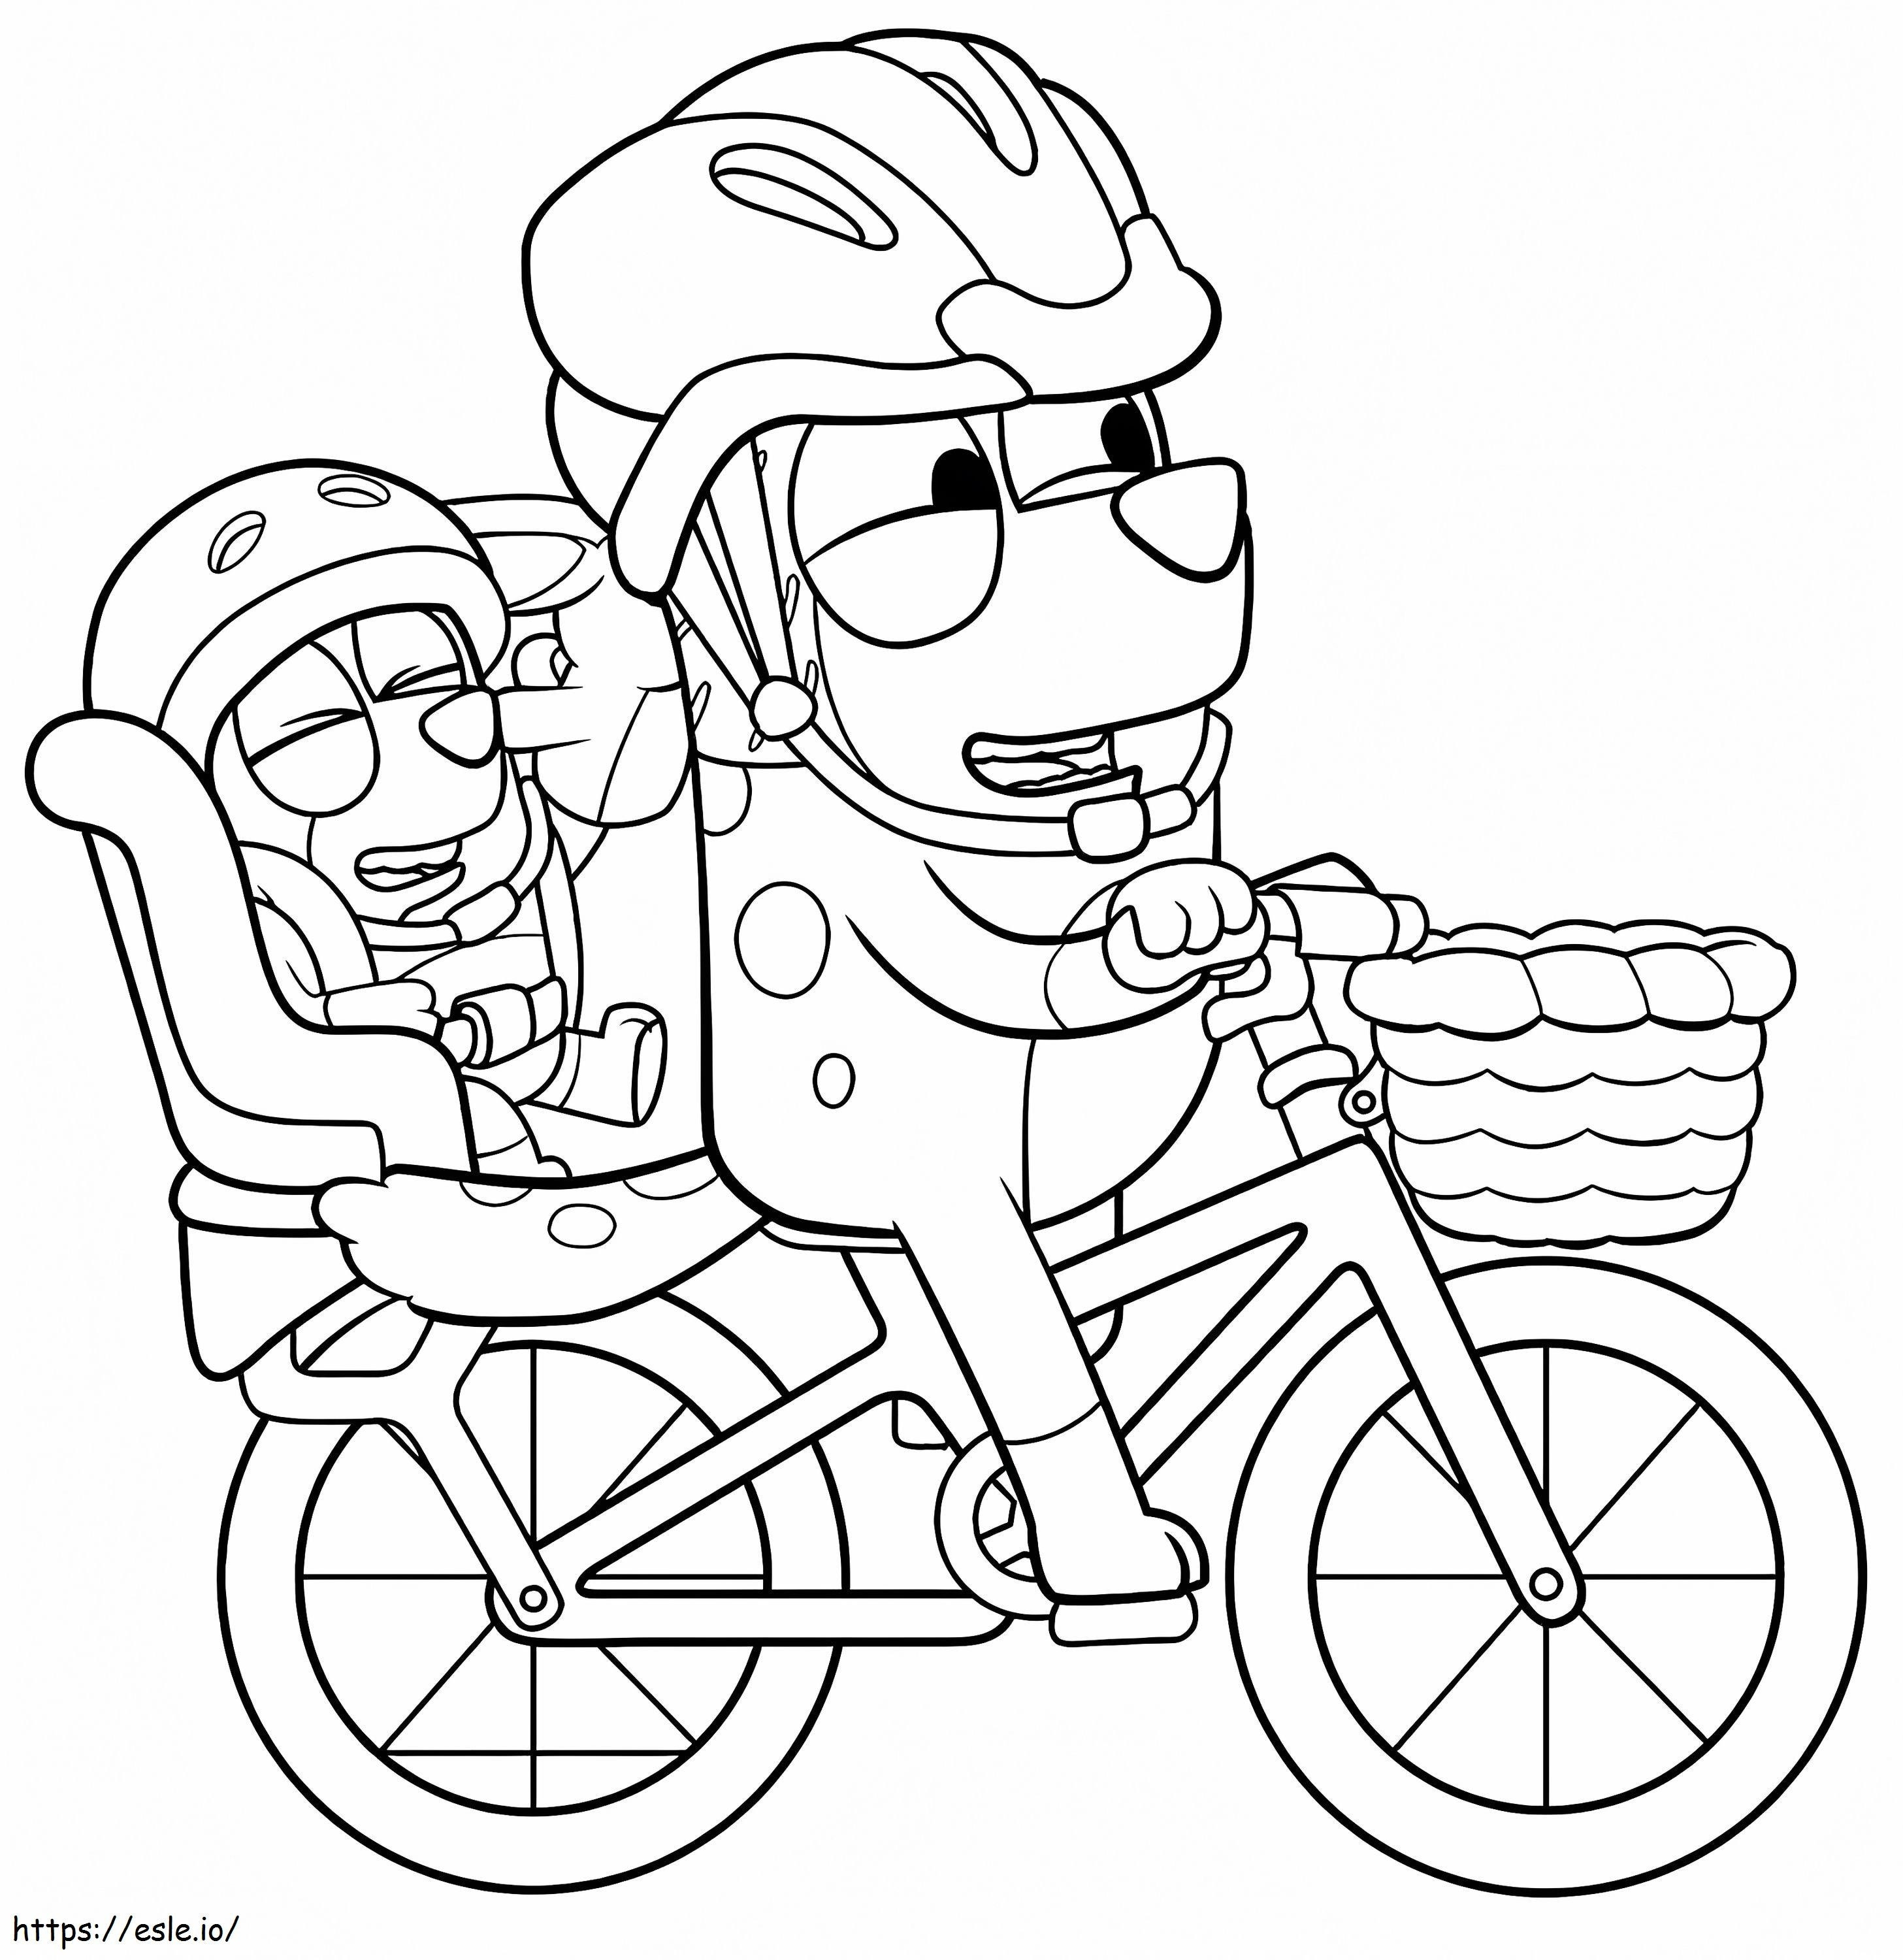 Bluey und Bingo auf dem Fahrrad ausmalbilder